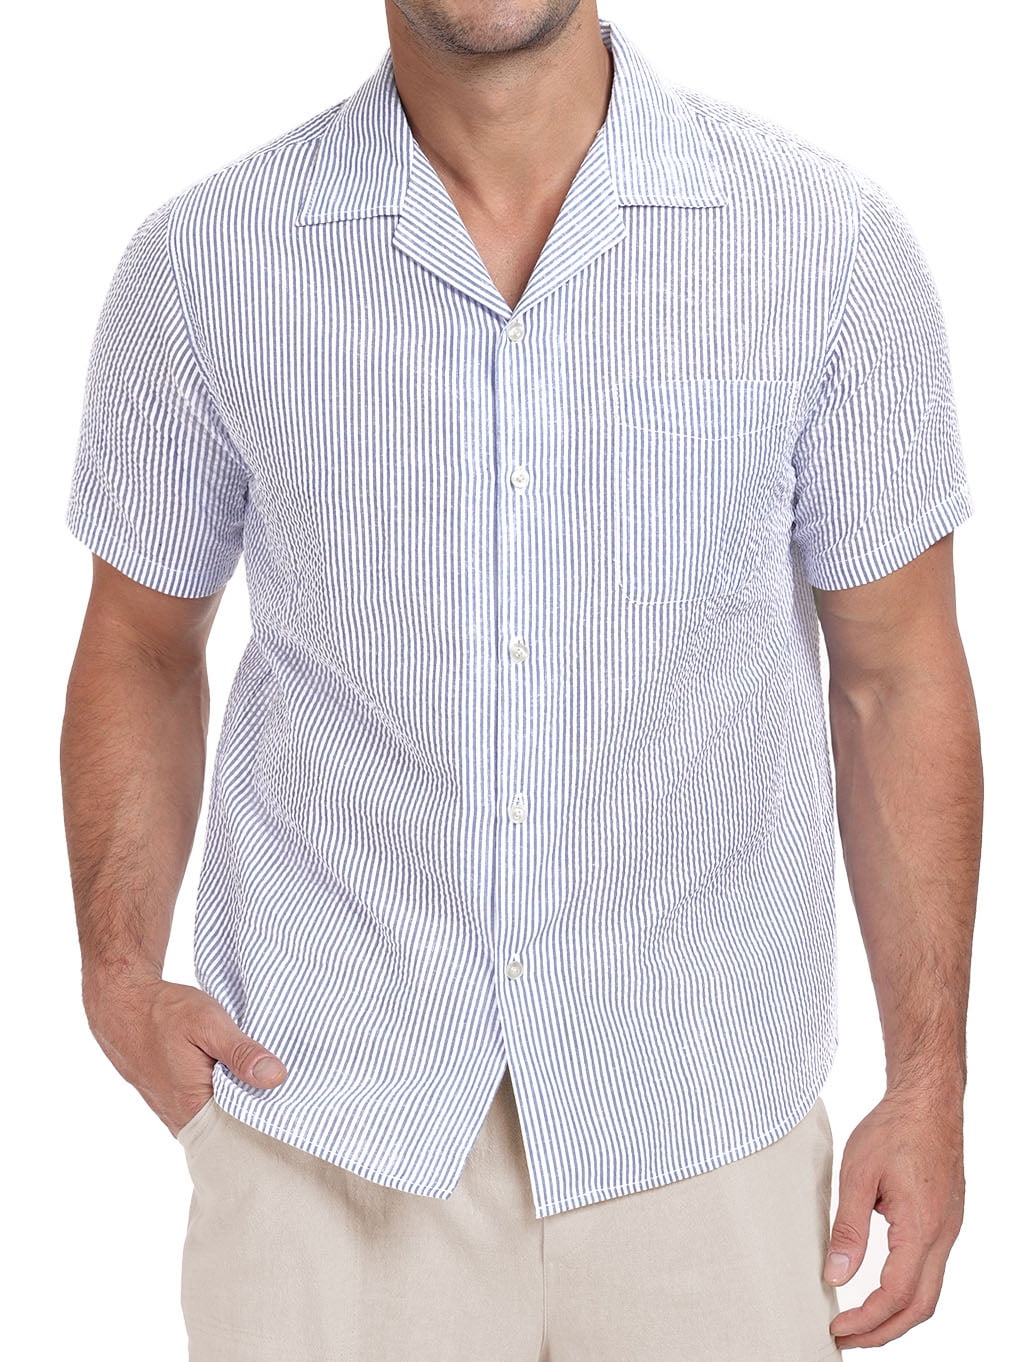 GIRUNS Men's Striped Summer Casual Shirt Button Short Sleeve Hawaiian ...